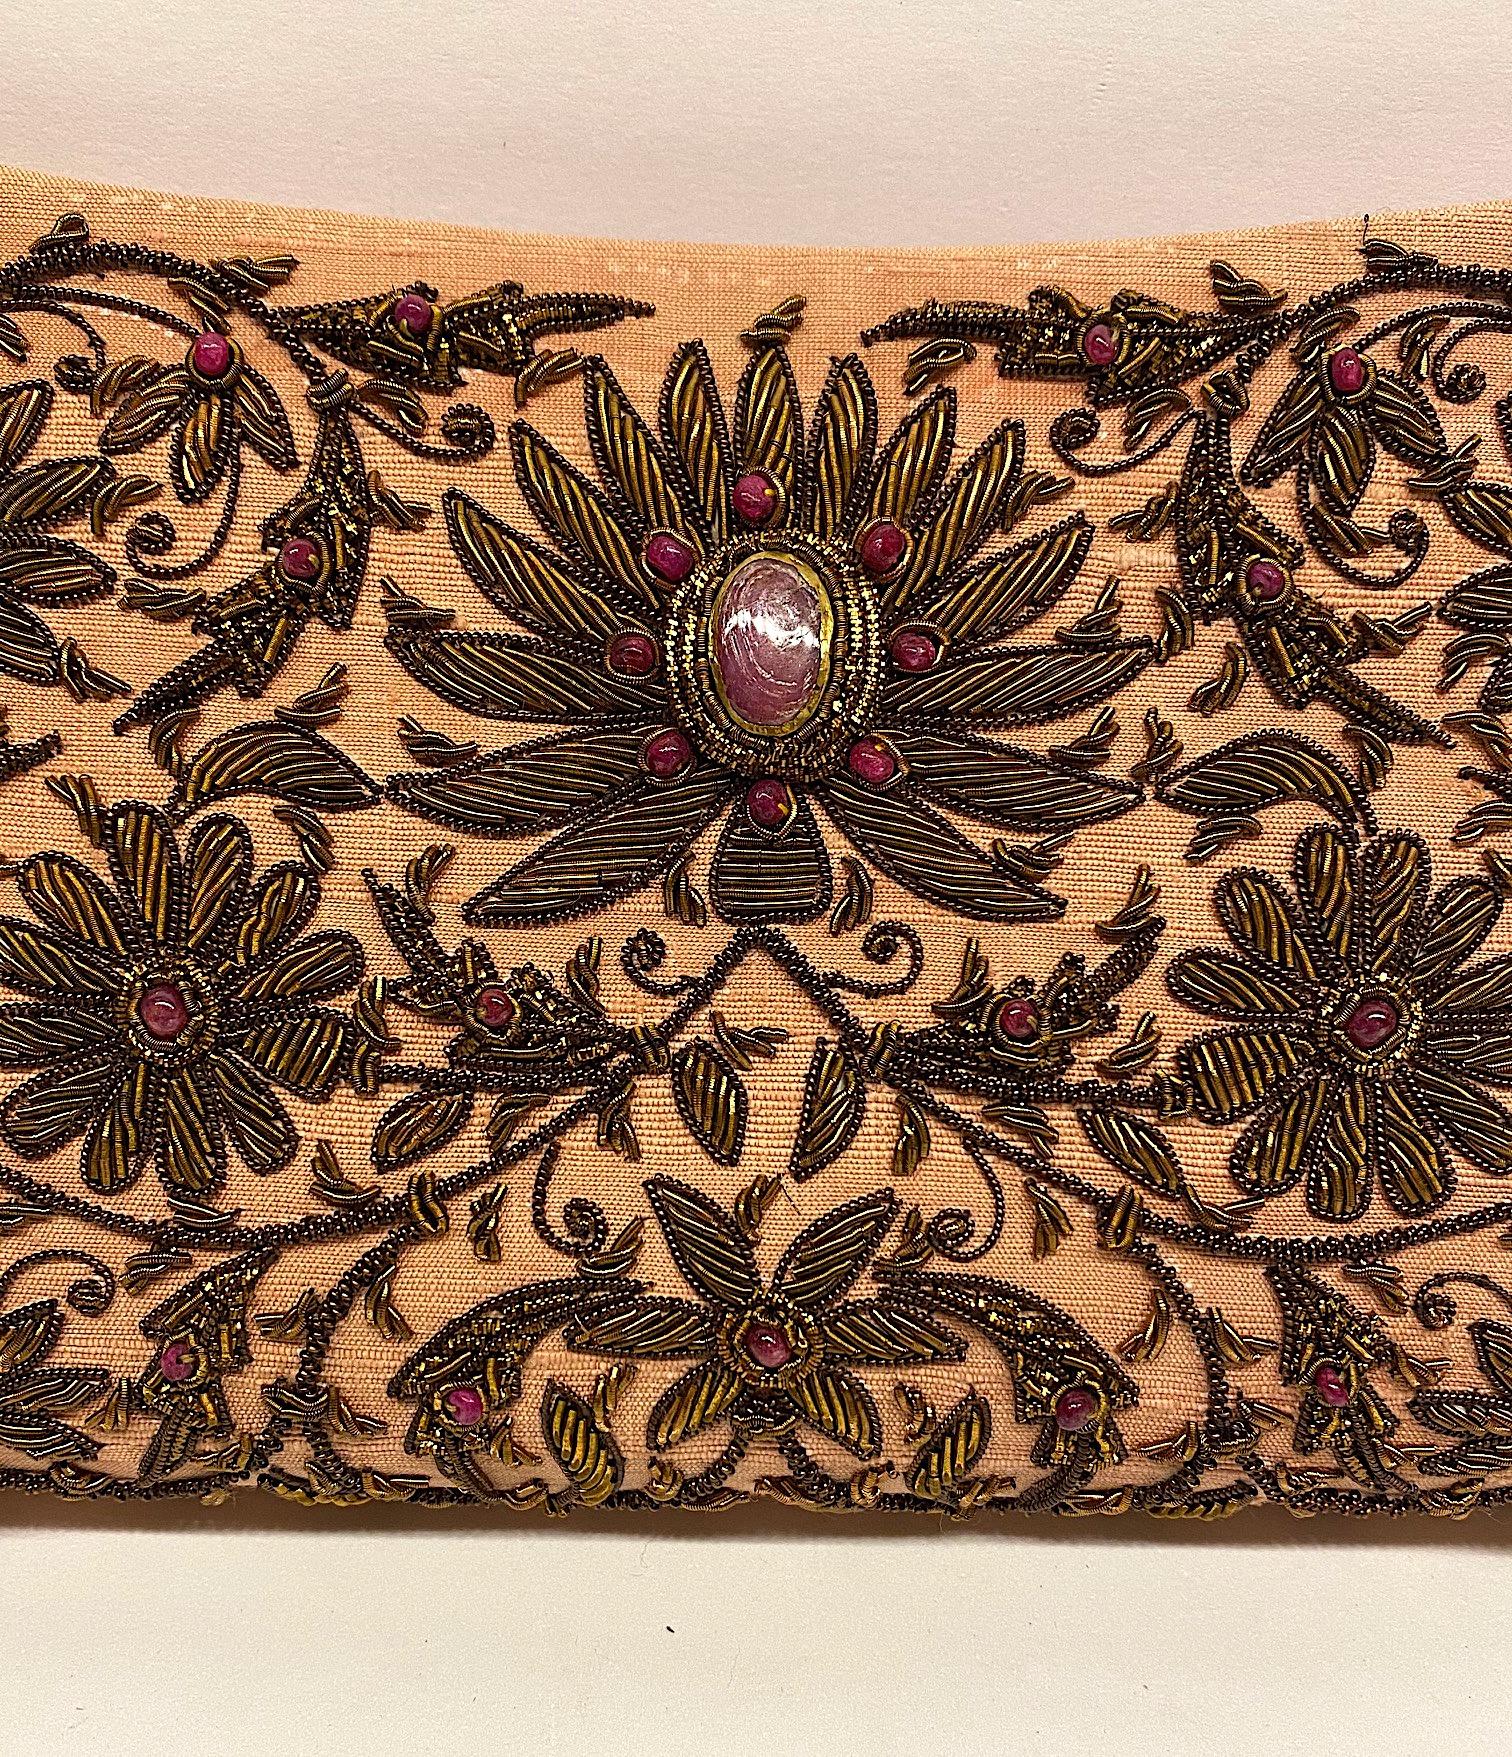 Eine wunderschöne und aufwendig handbestickte Abendtasche aus Indien. Die Verwendung von Gold- und Silberfäden und kostbaren Juwelen in der Stickerei ist als Zardozi bekannt und wurde einst verwendet, um die Kleidung der Könige und der königlichen